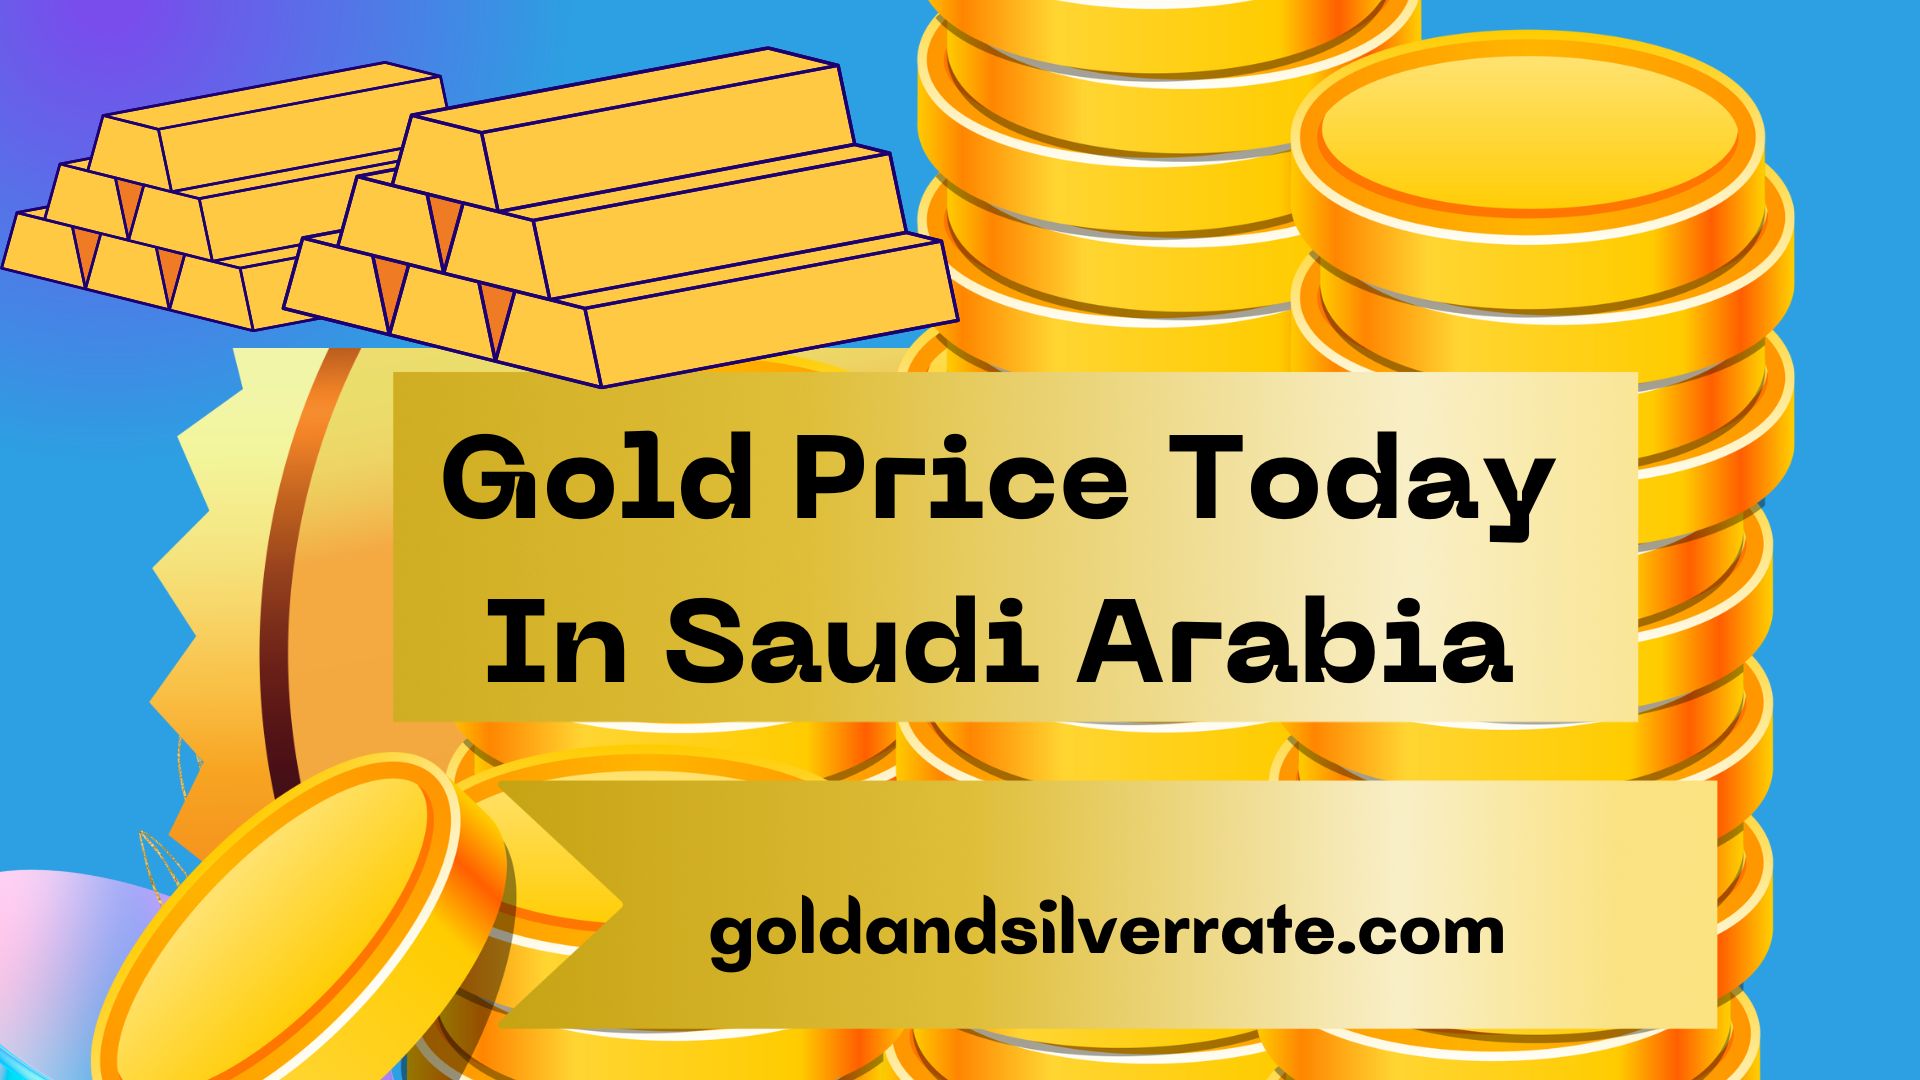 GOLD PRICE TODAY IN SAUDI ARABIA